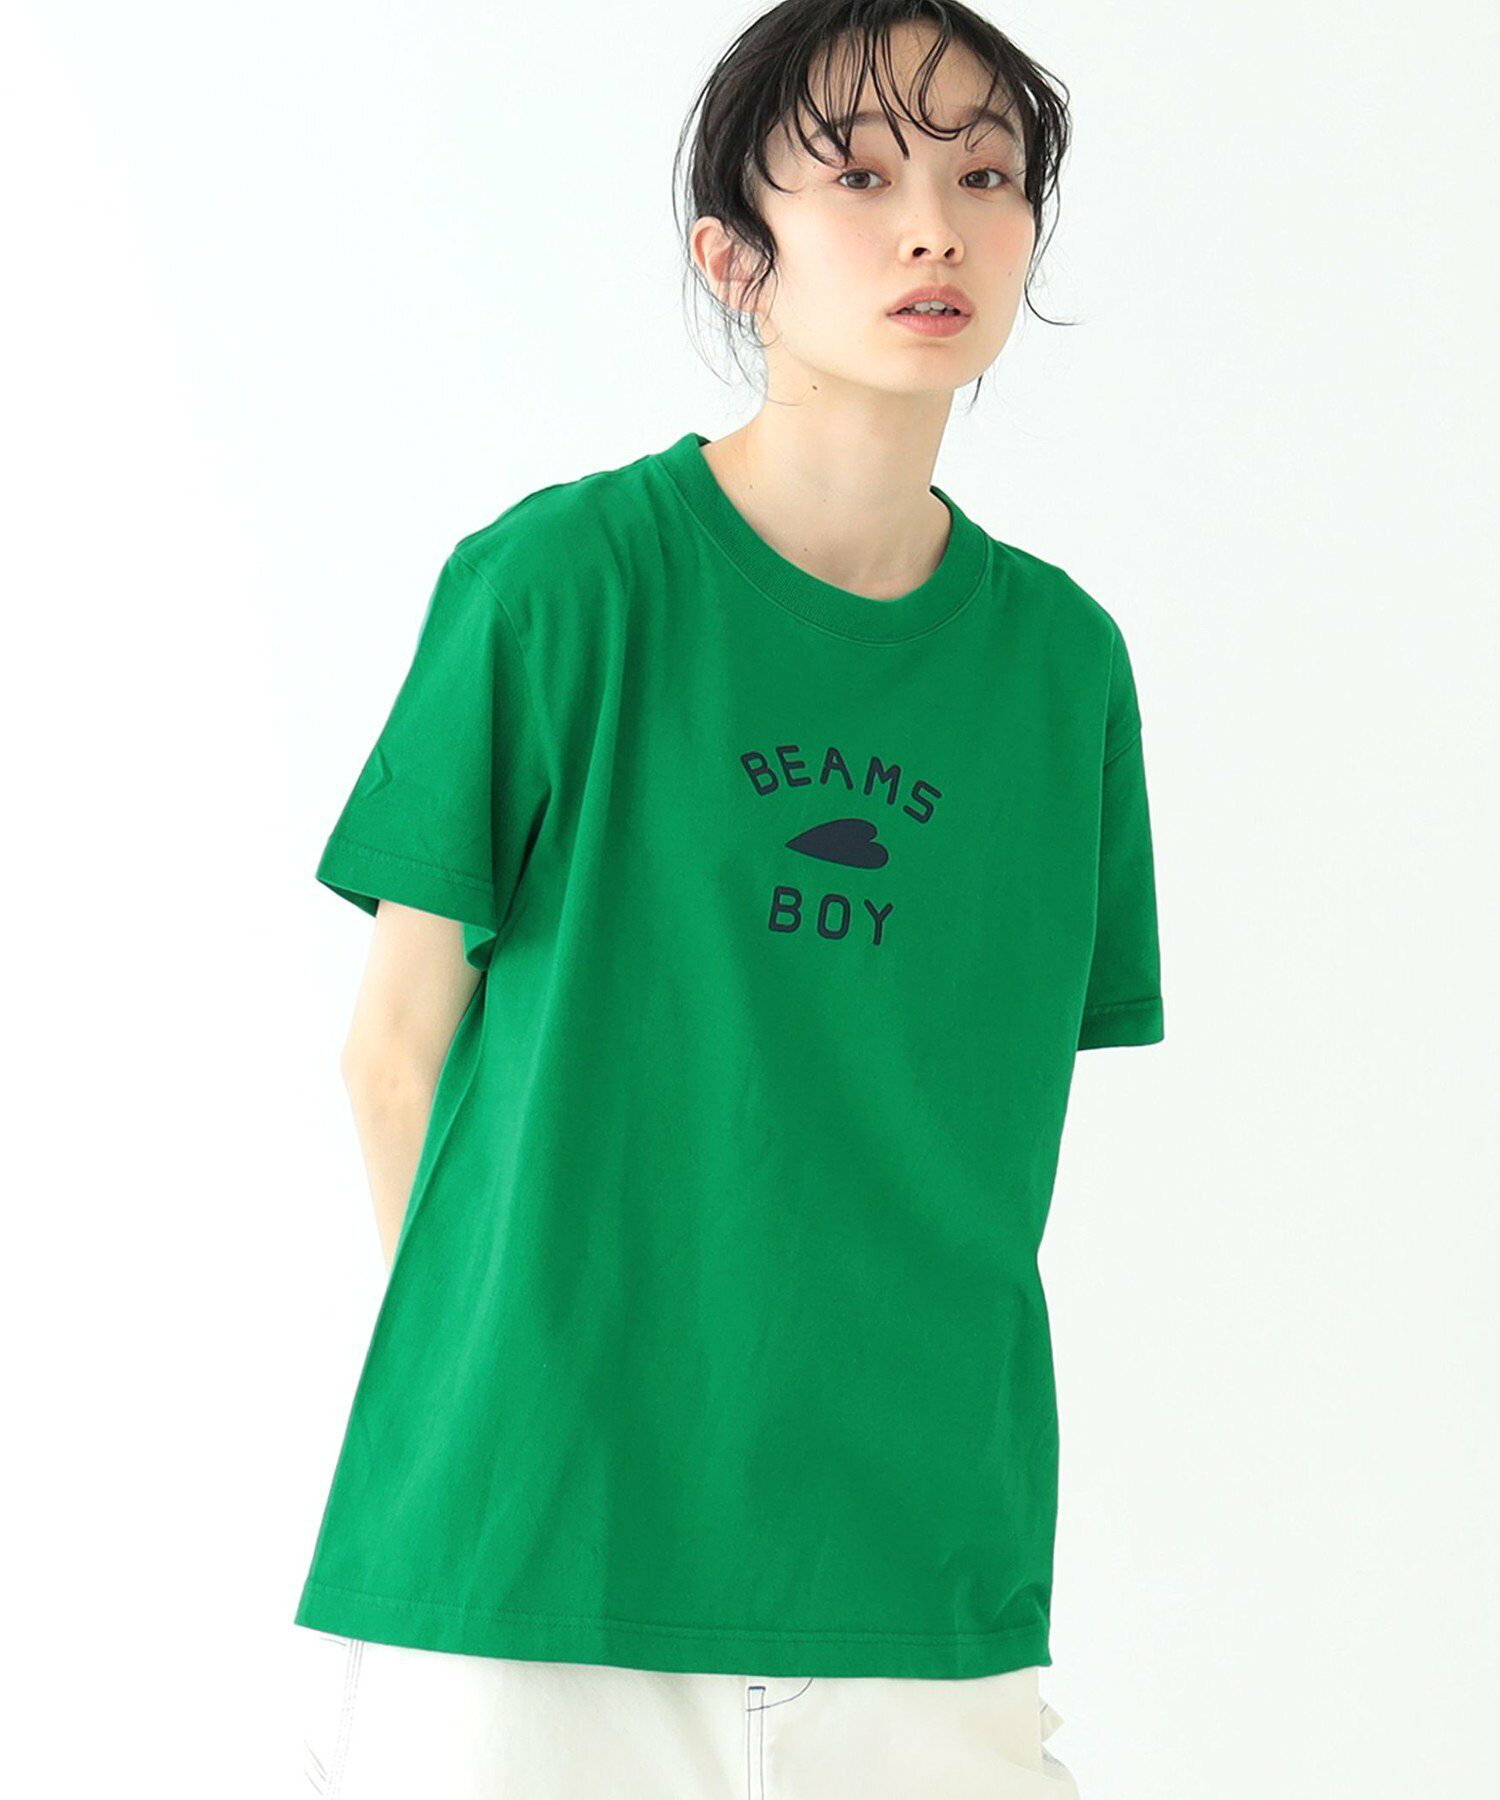 【受注生産商品】BEAMS BOY / HEART ロゴ Tシャツ